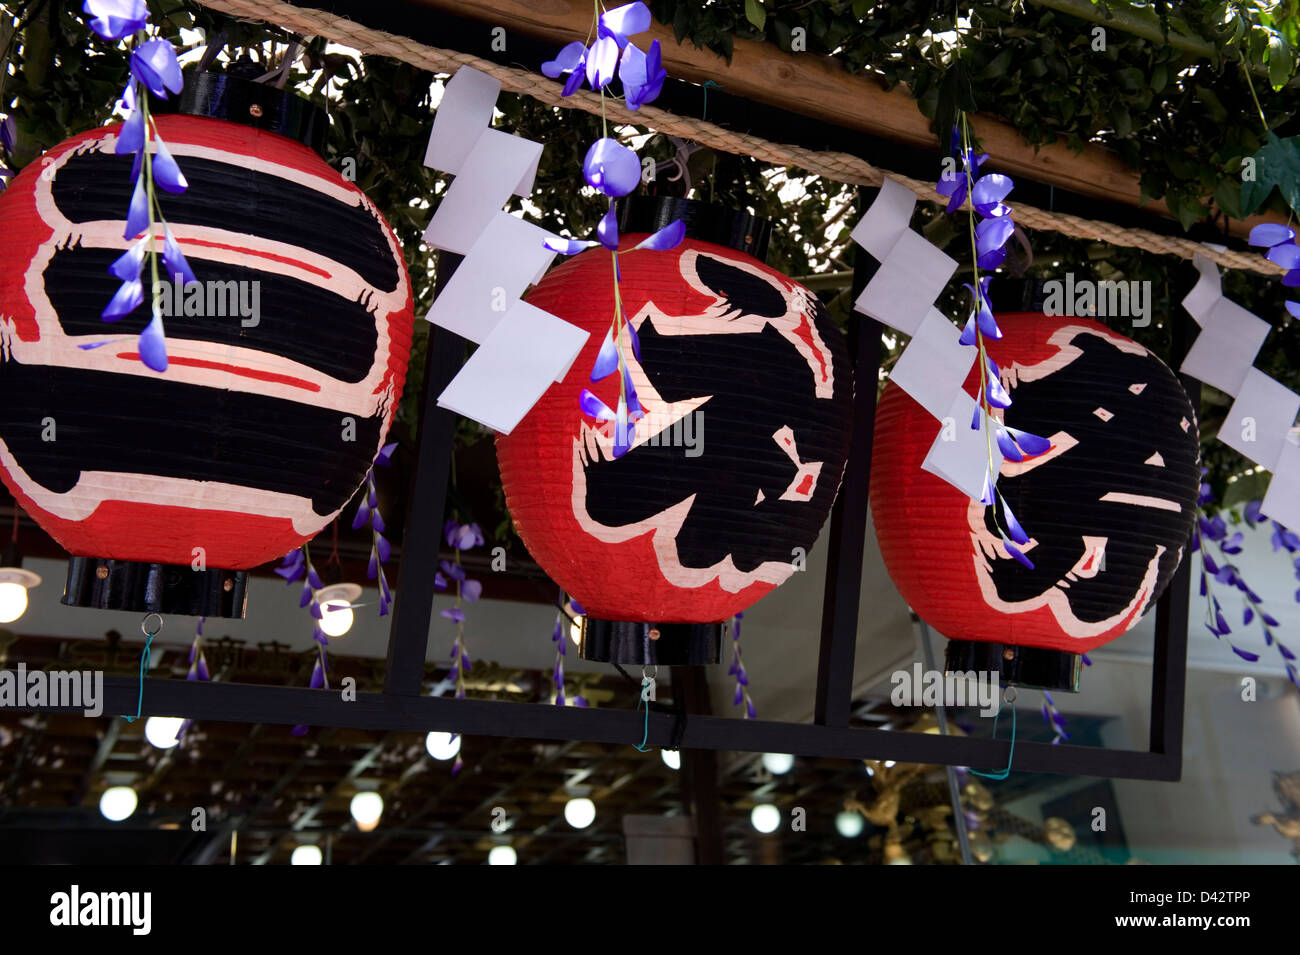 Tre chochin carta lanterne con i caratteri Kanji San-Ja-matsuri o Sanja Festival, uno dei tre grandi festival di Tokyo. Foto Stock